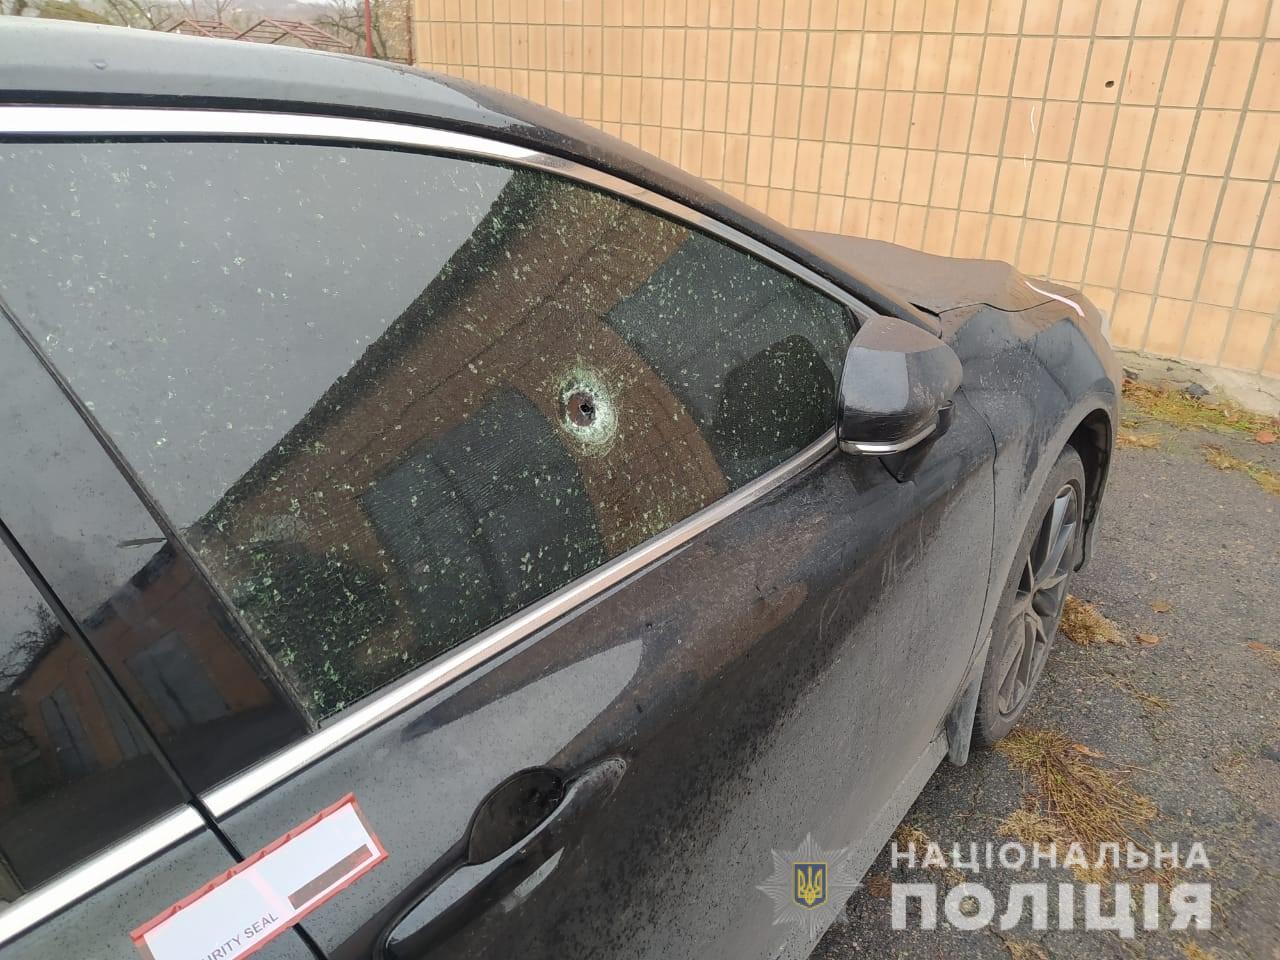 Житель Кіровоградщини обстріляв чужу автівку, через конфлікт на дорозі